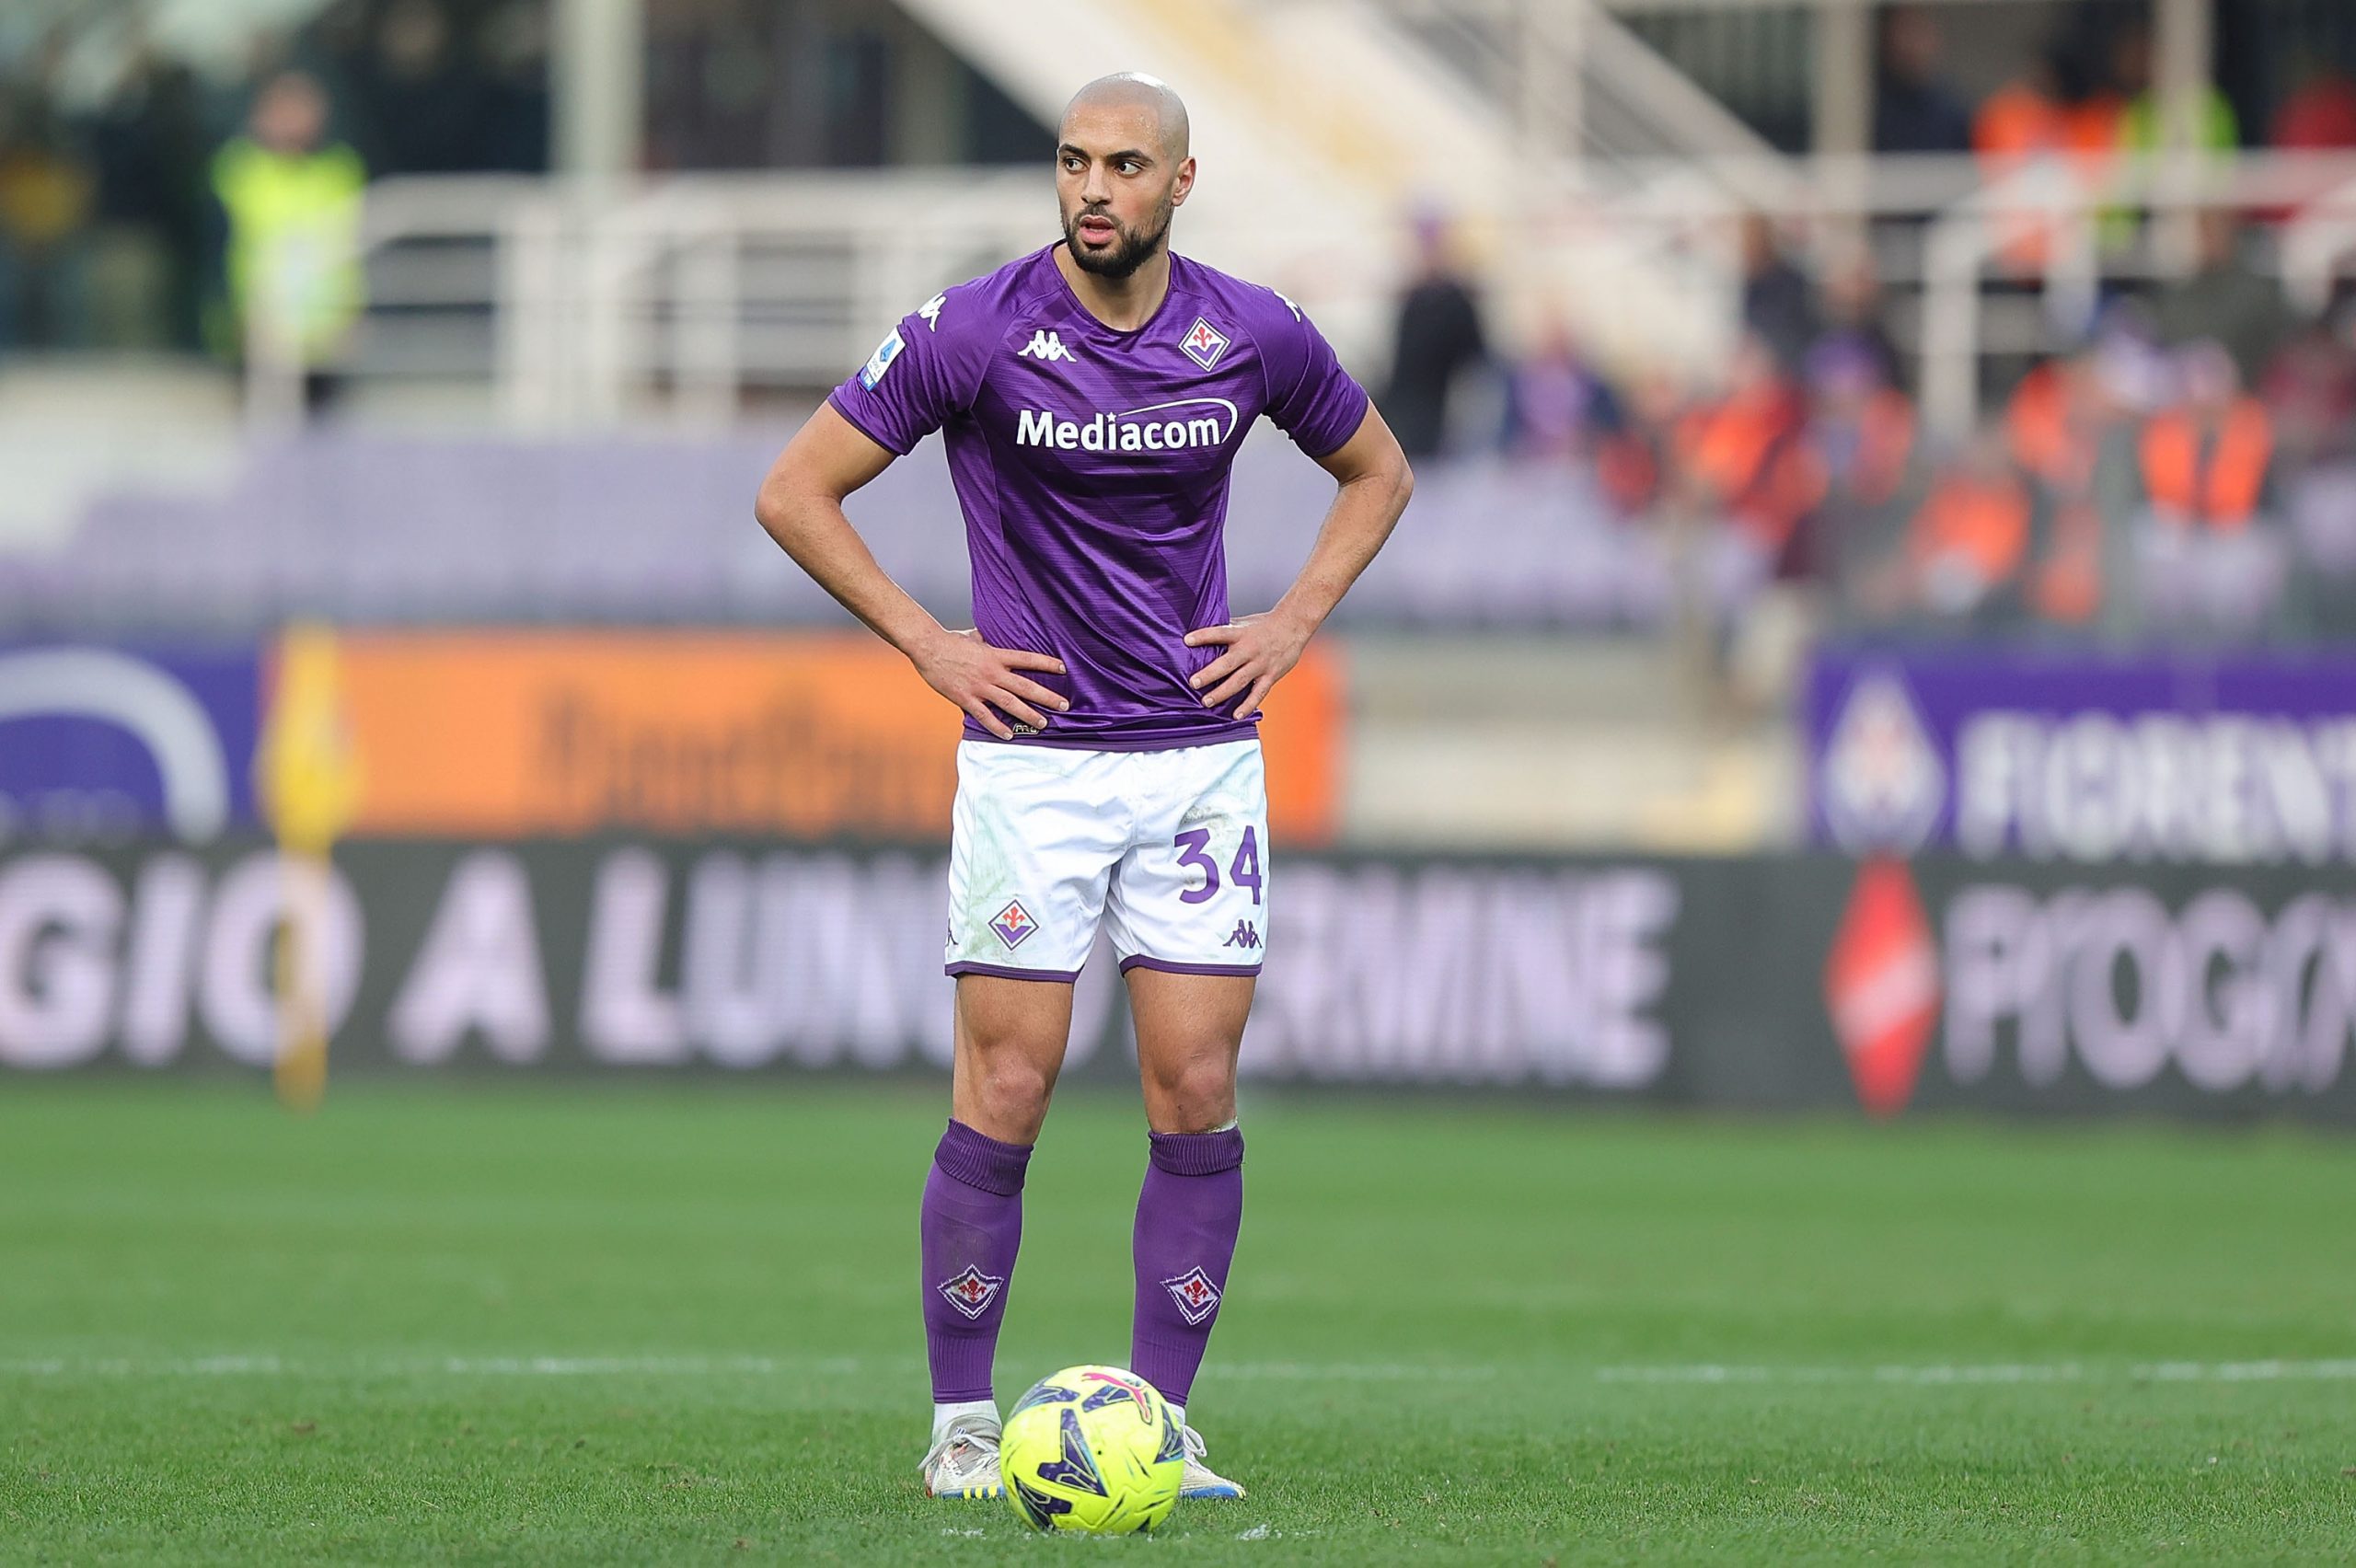 Sofyan Amrabat of Fiorentina